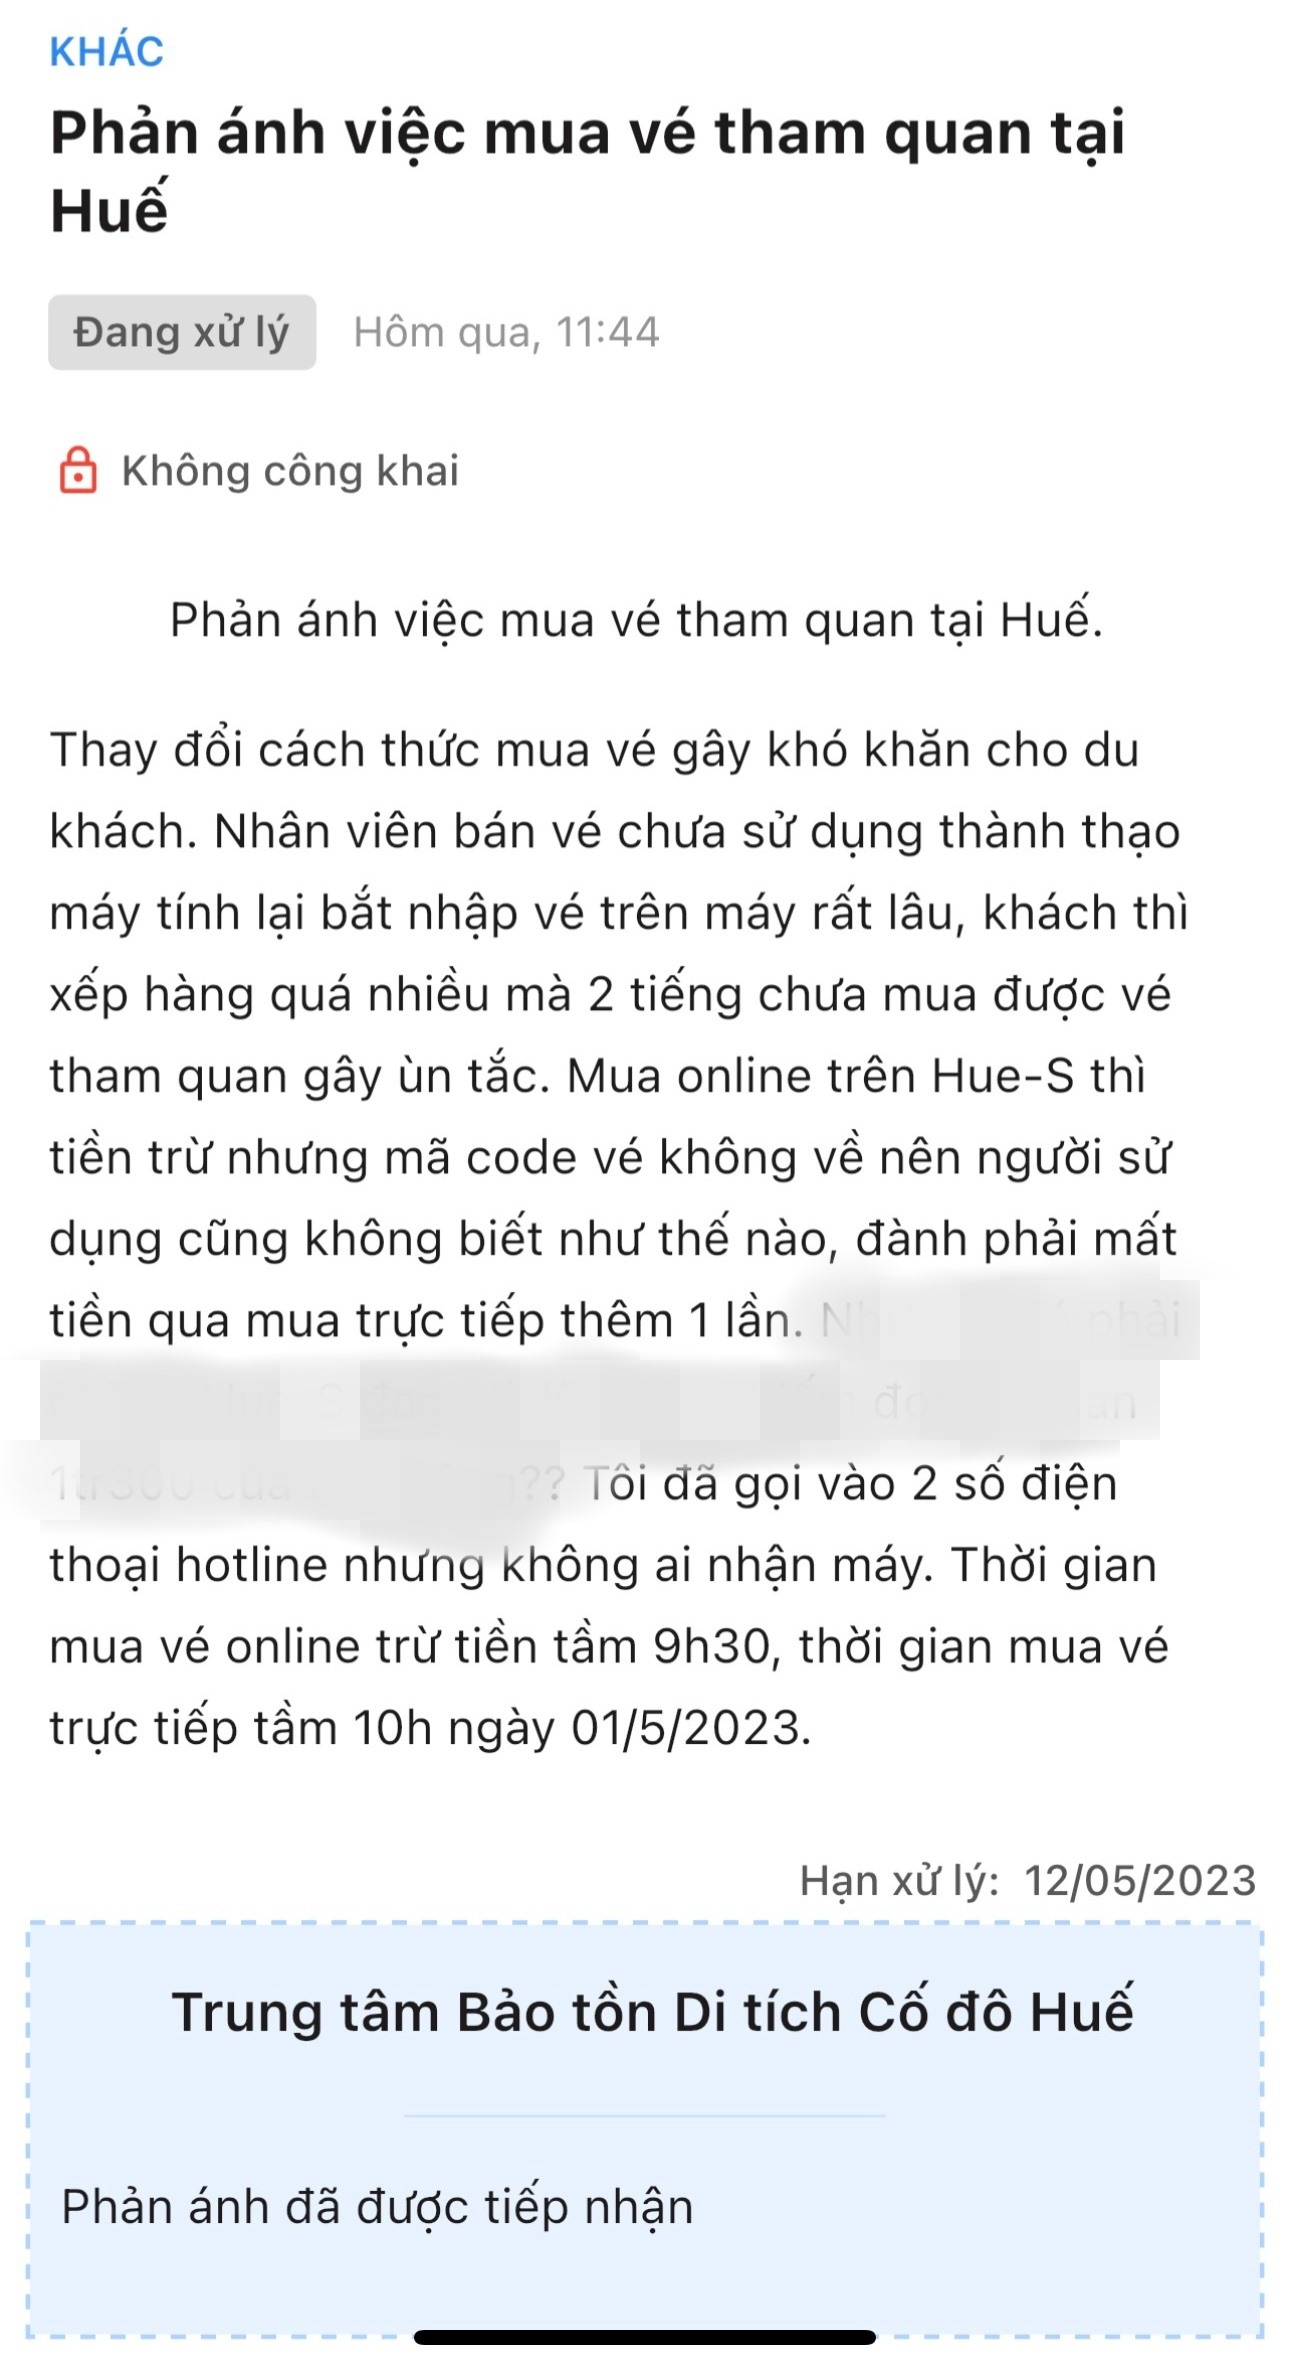 Mua vé online nhưng code vé không về nên hướng dẫn viên đã gửi phản ánh lên hệ thống Hue-S. Ảnh: HDV cung cấp.